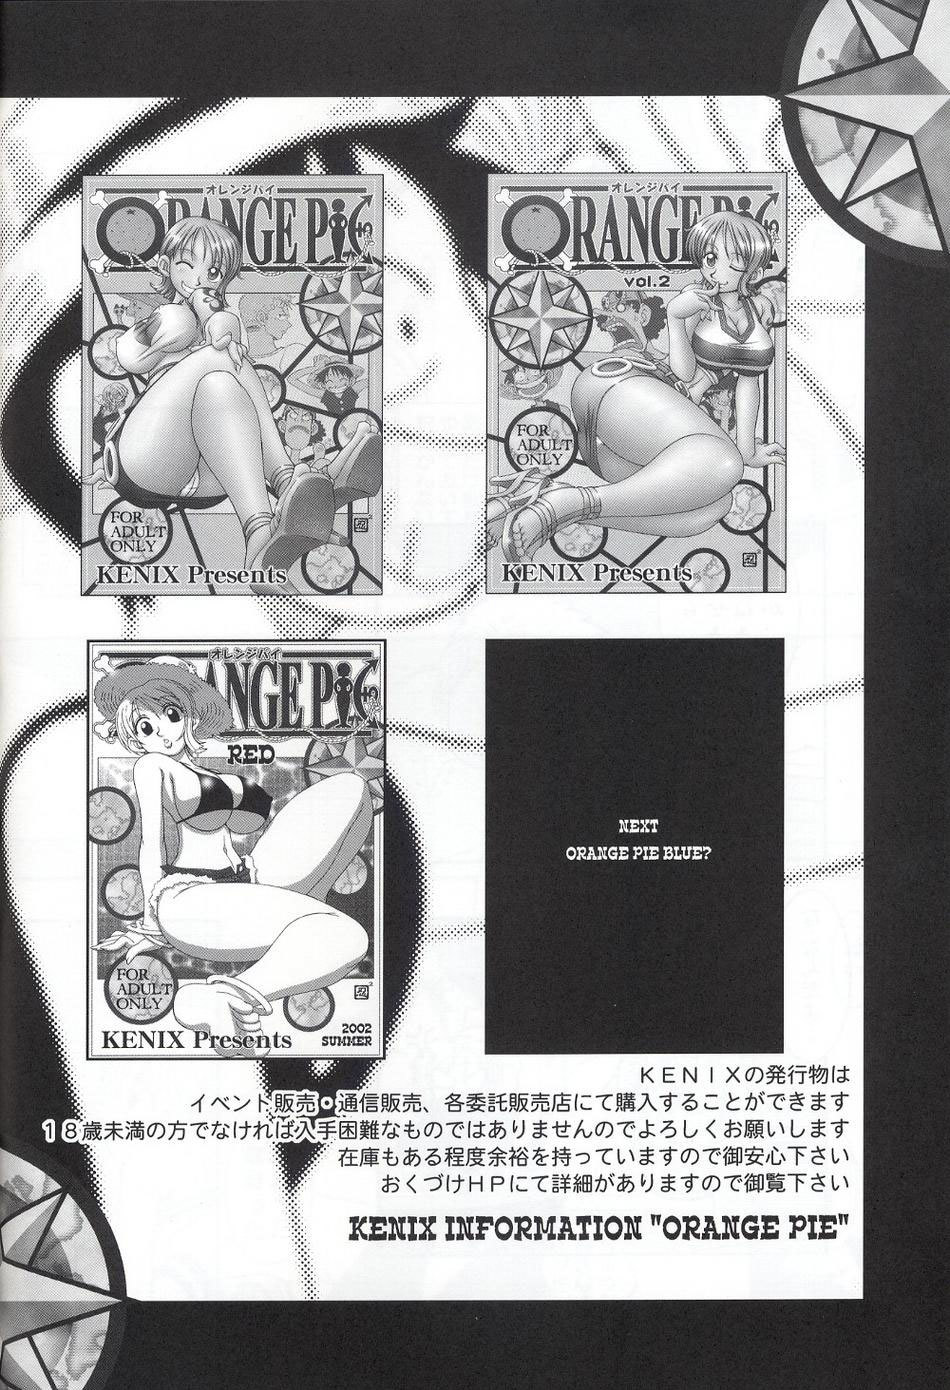 ORANGE PIE Vol.2 one piece 29 hentai manga